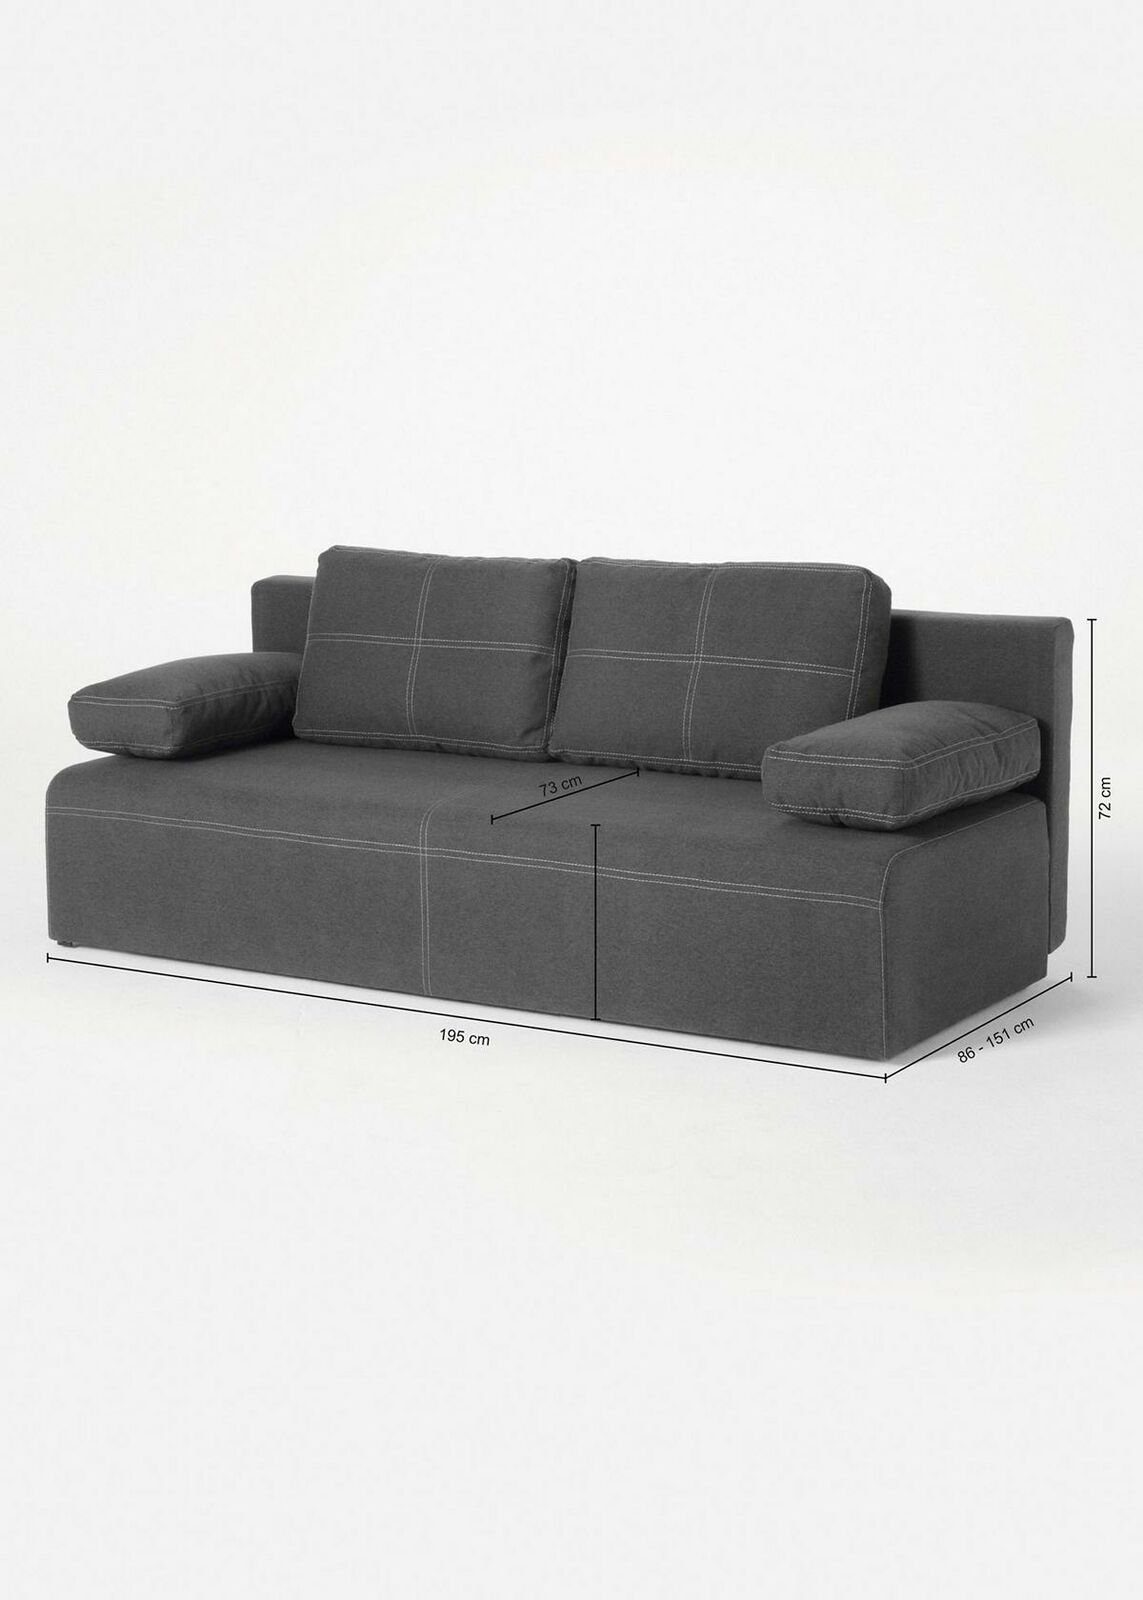 Made Europe Dreisitzer Möbel Grau Sofa Luxus Design Stoffsofa JVmoebel Neu, Couch in Grüner